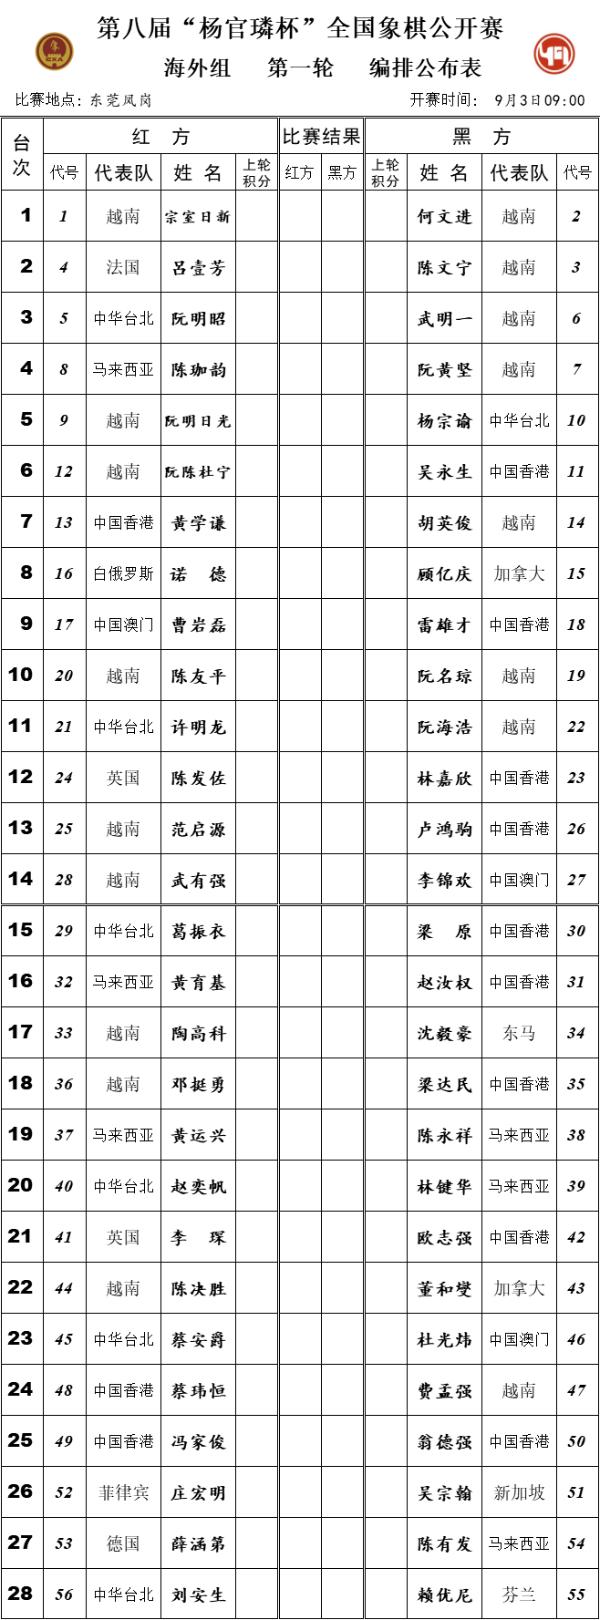 杨官璘杯象棋公开赛对阵与结果查询